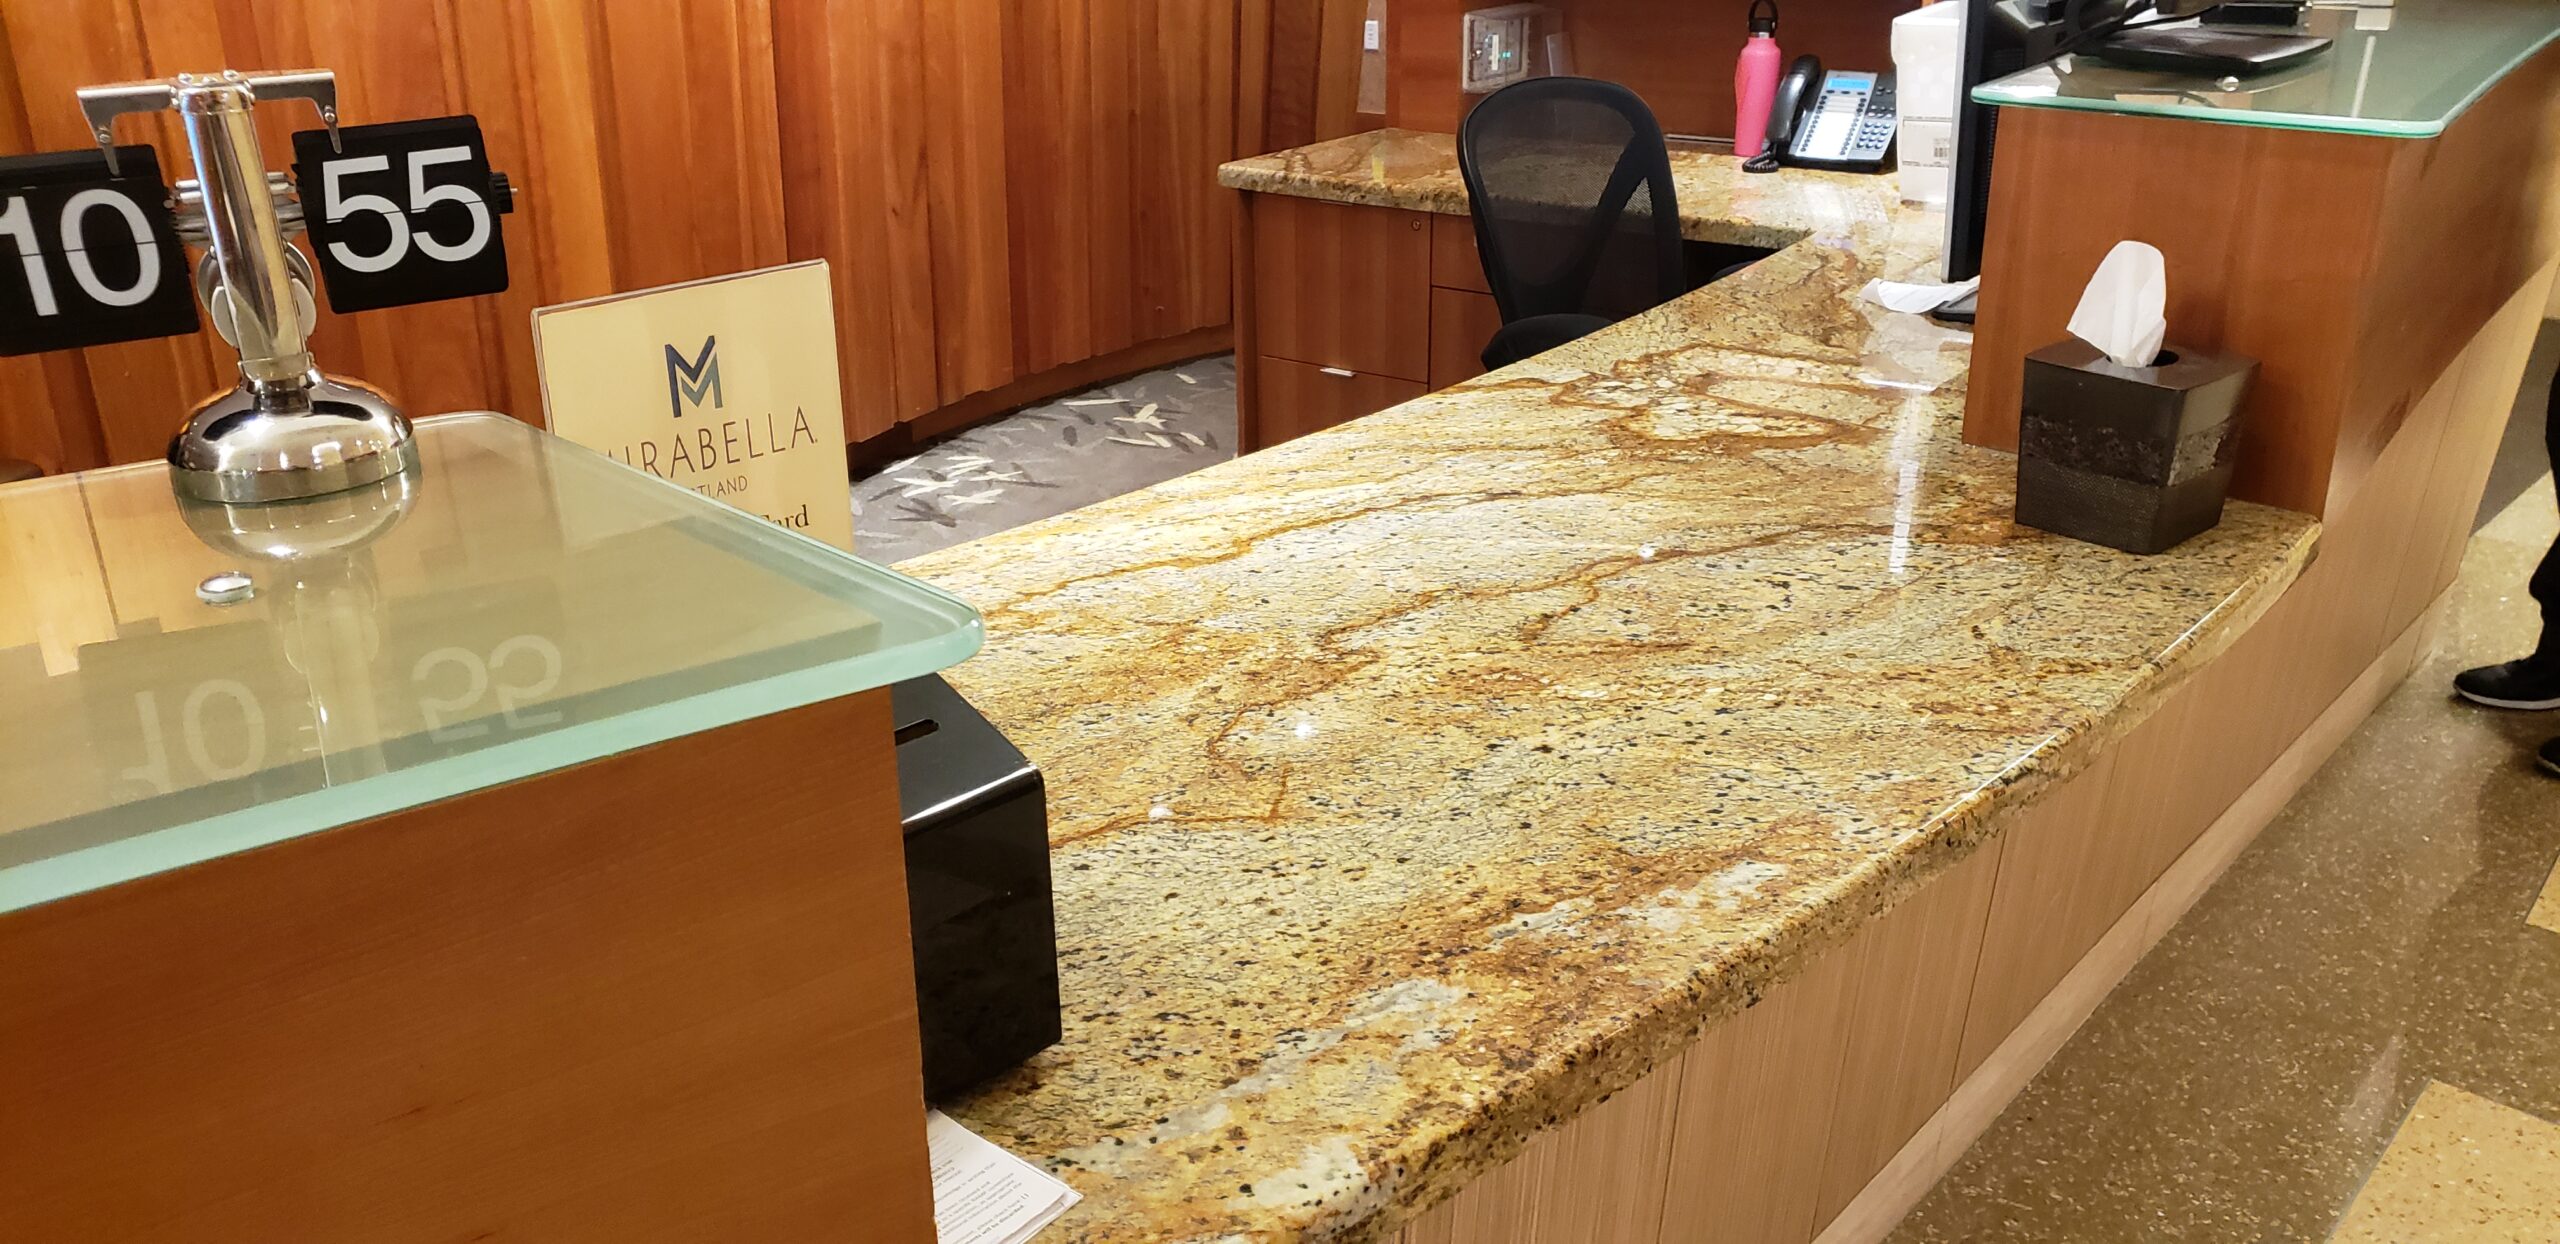 the original granite countertop we installed